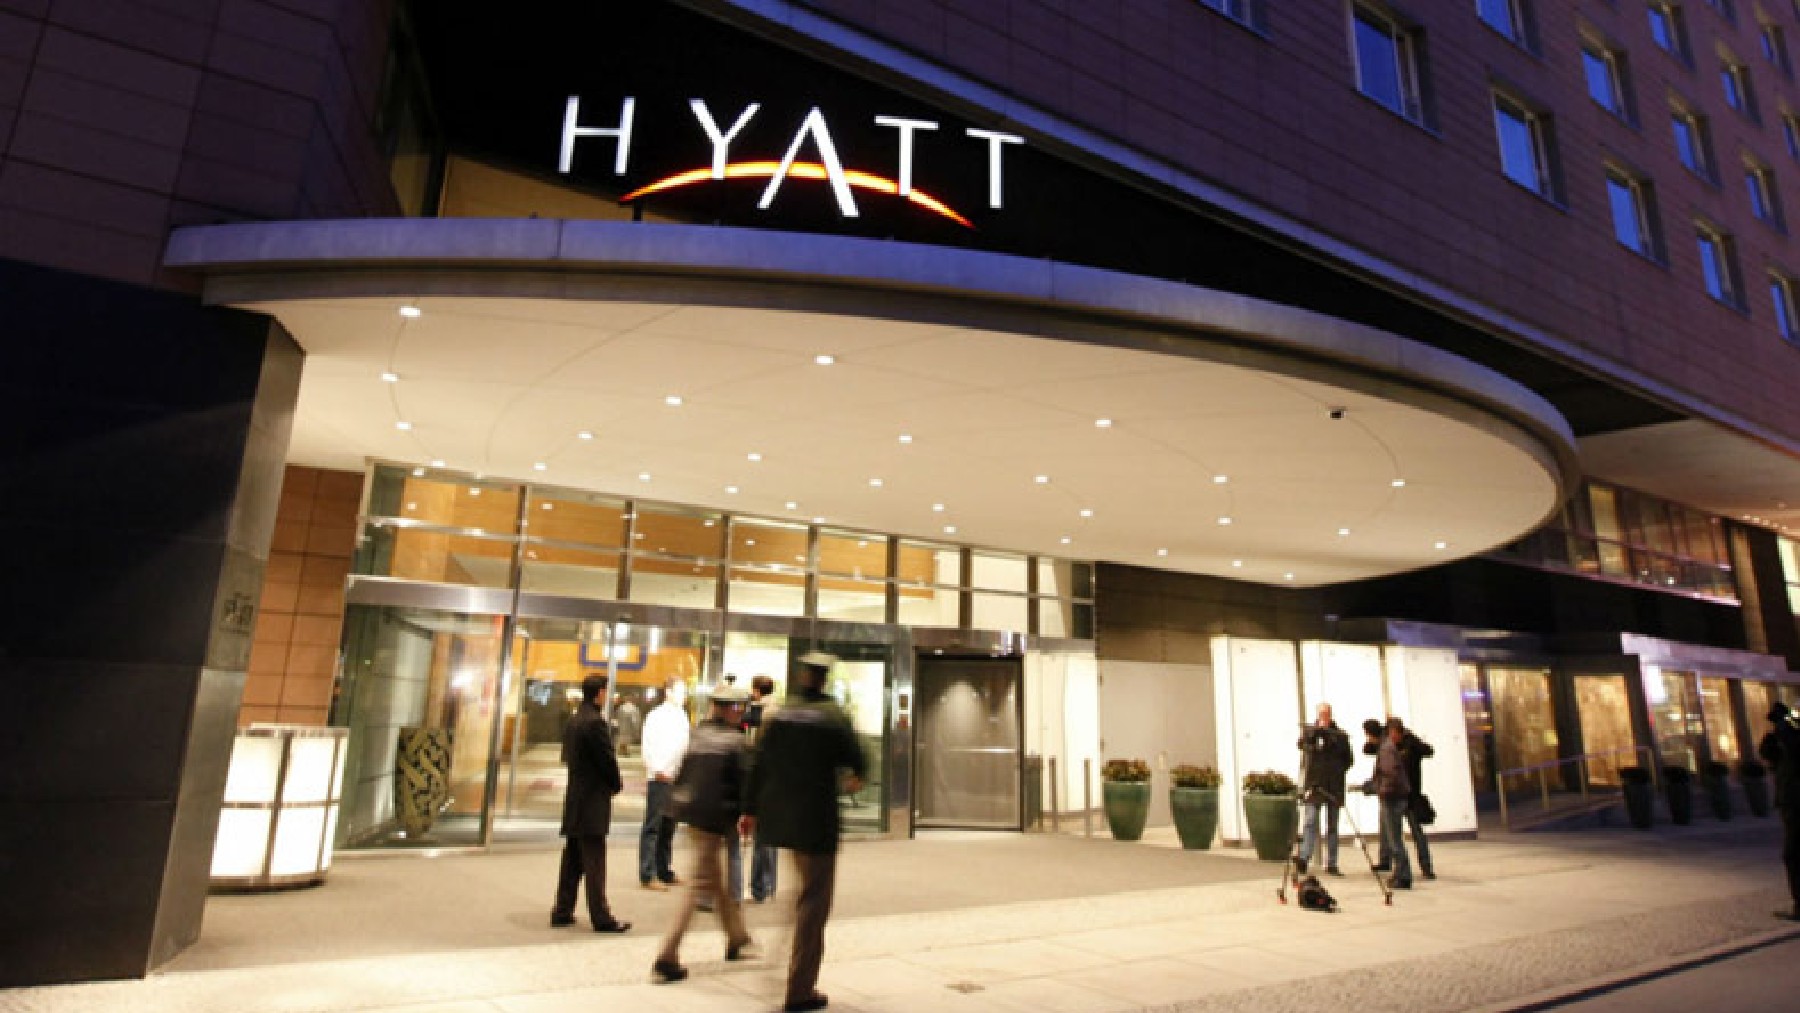 Hotel Hyatt.